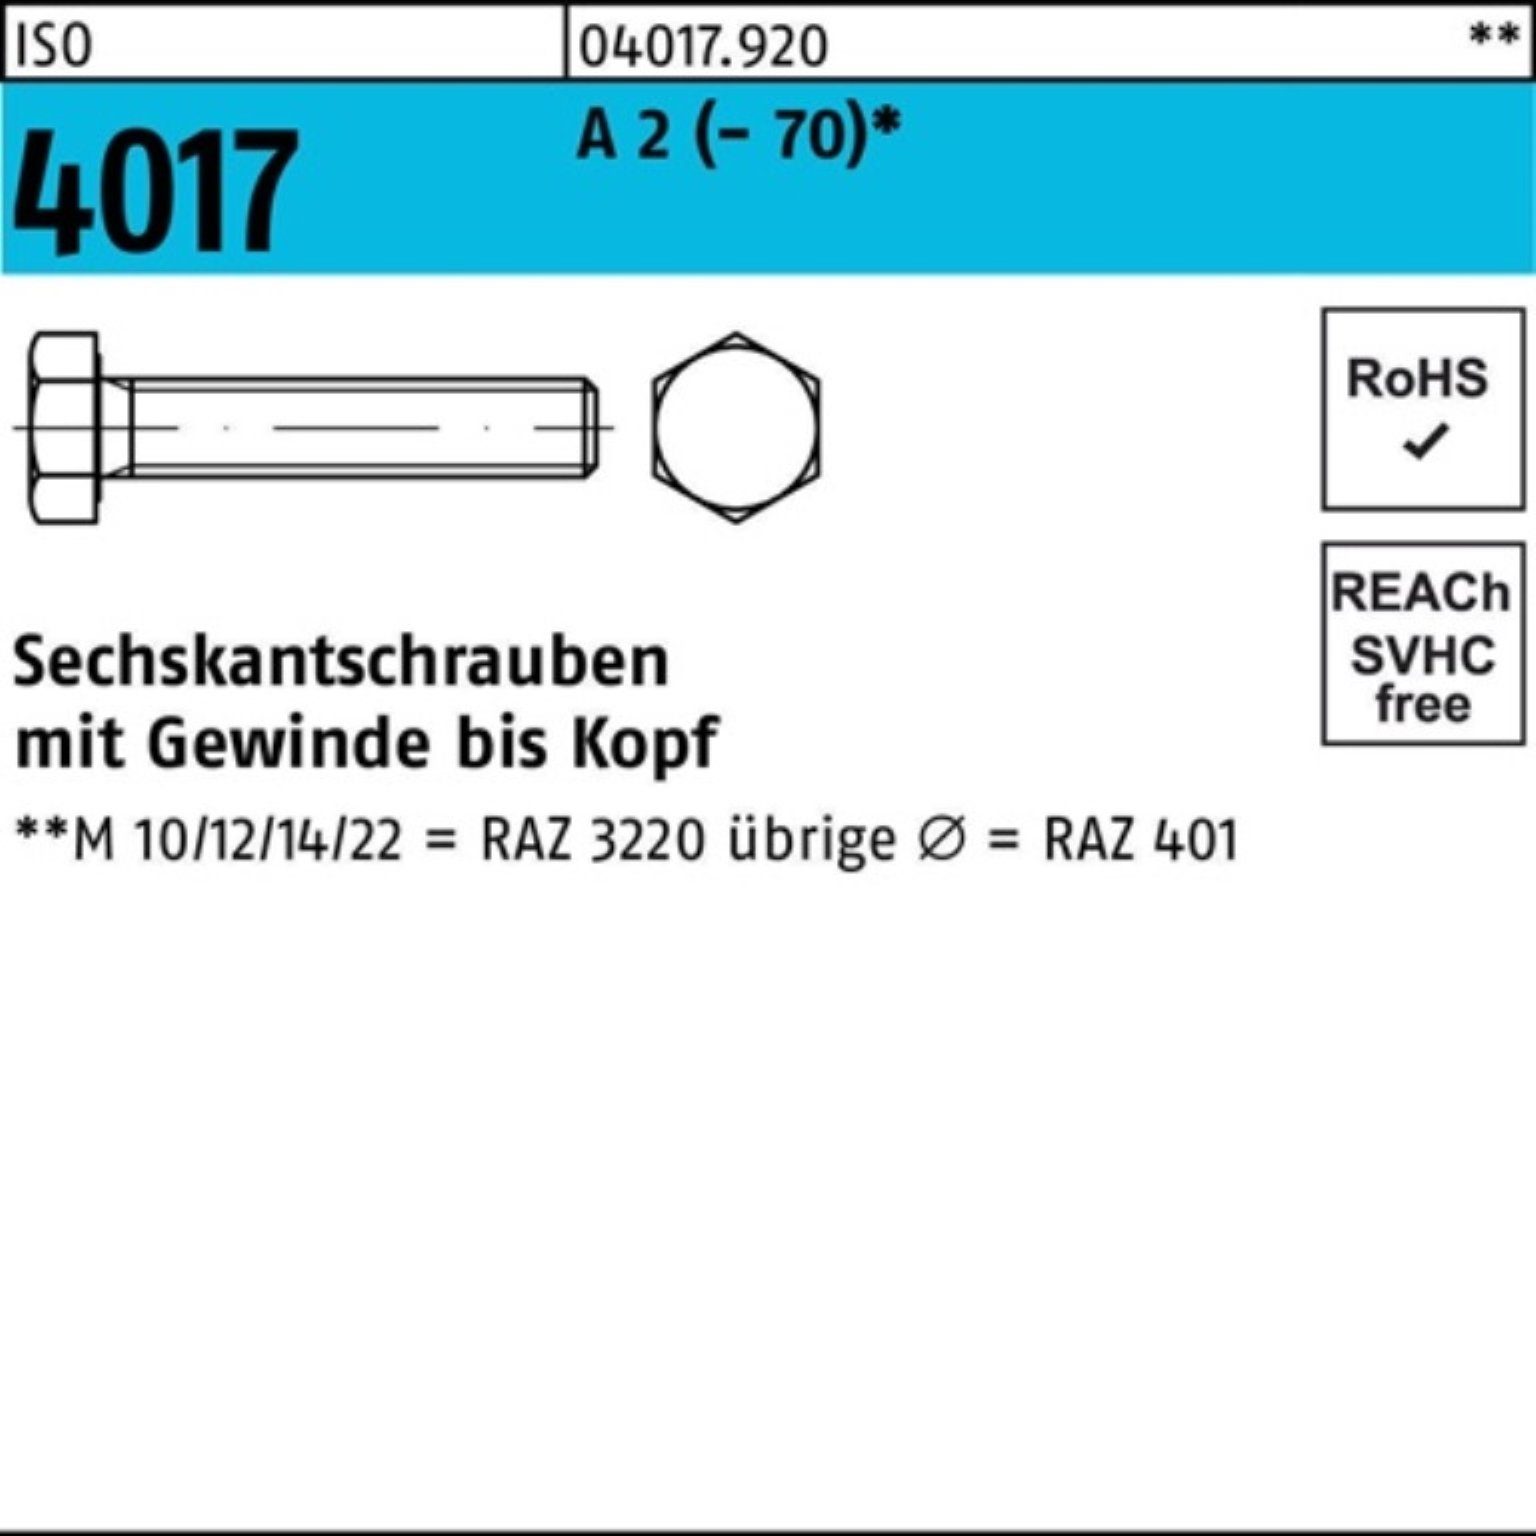 M10x ISO Sechskantschraube 18 Pack 100er (70) Bufab 4017 100 A 2 VG Stück Sechskantschraube